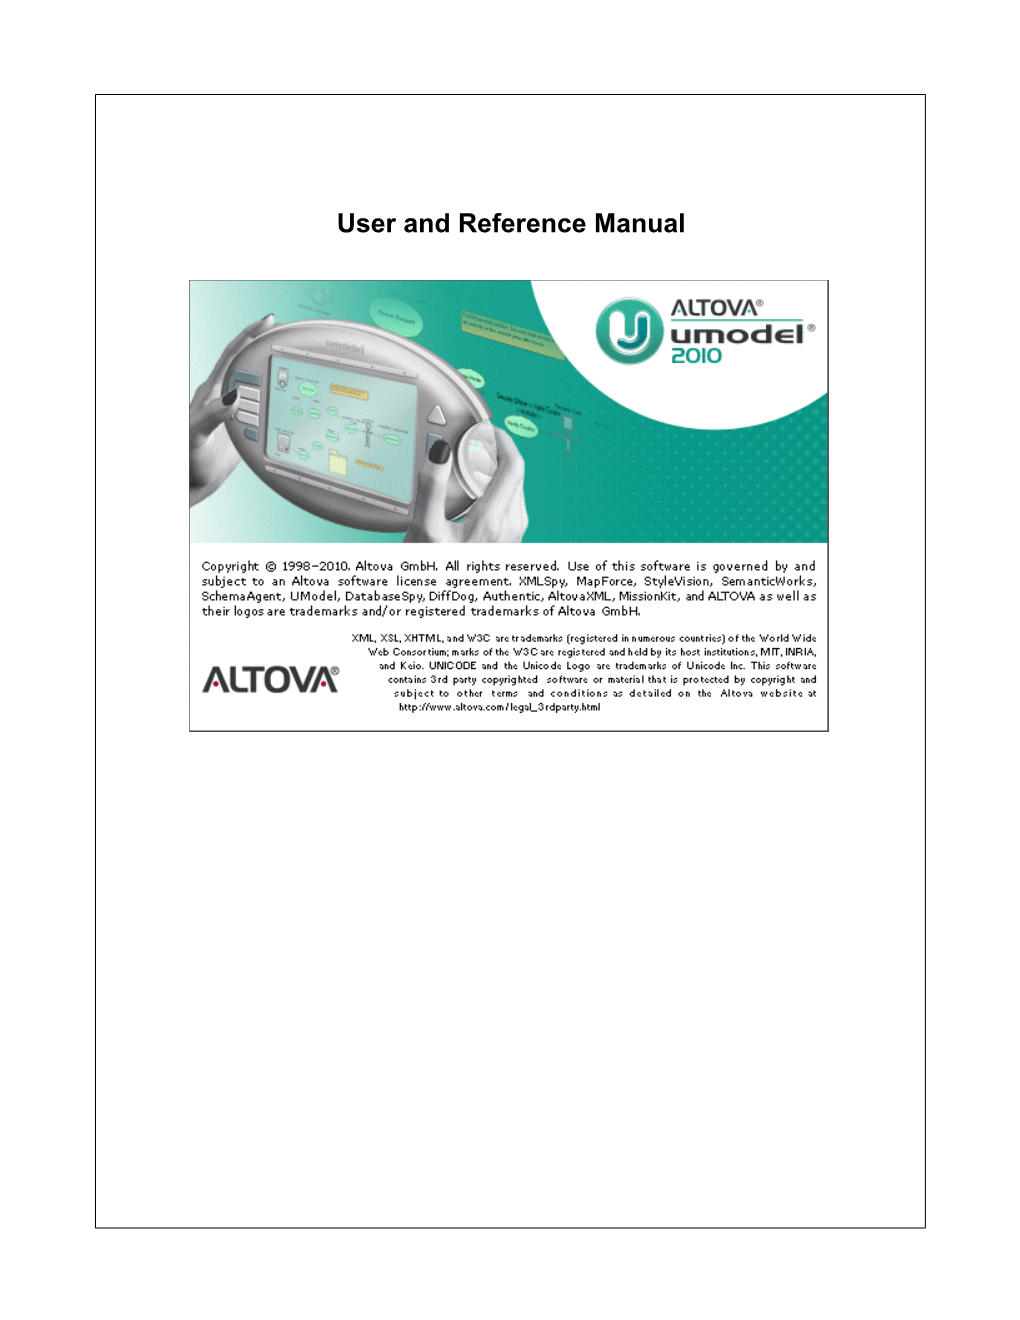 Altova Umodel 2010 User & Reference Manual